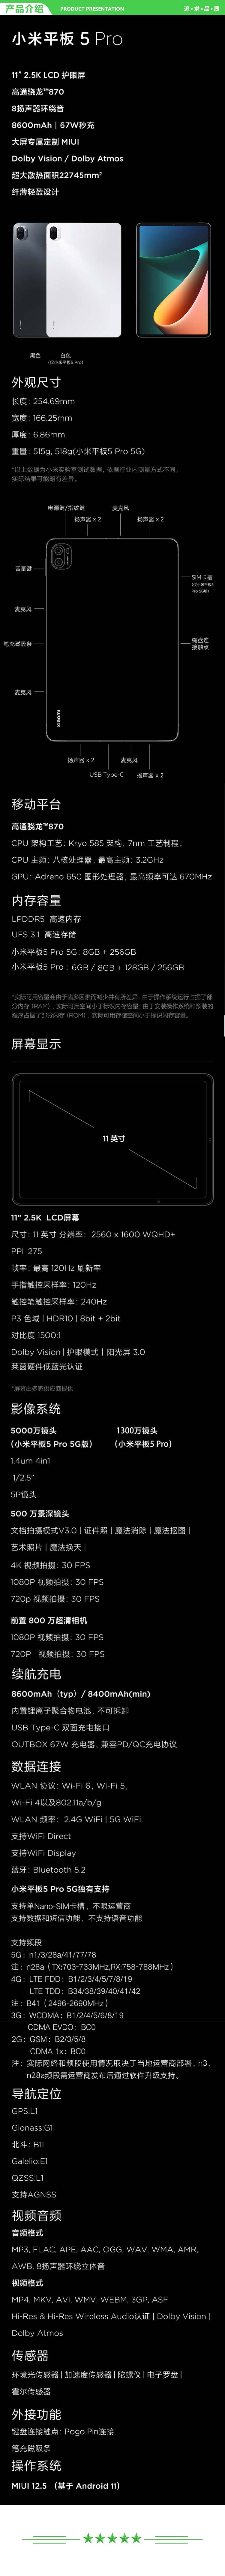 小米 xiaomi 平板5 Pro 平板电脑（11英寸2.5K高清 120Hz 骁龙860 6G+256GB 67W快充 杜比影音娱乐办公 白色）.jpg